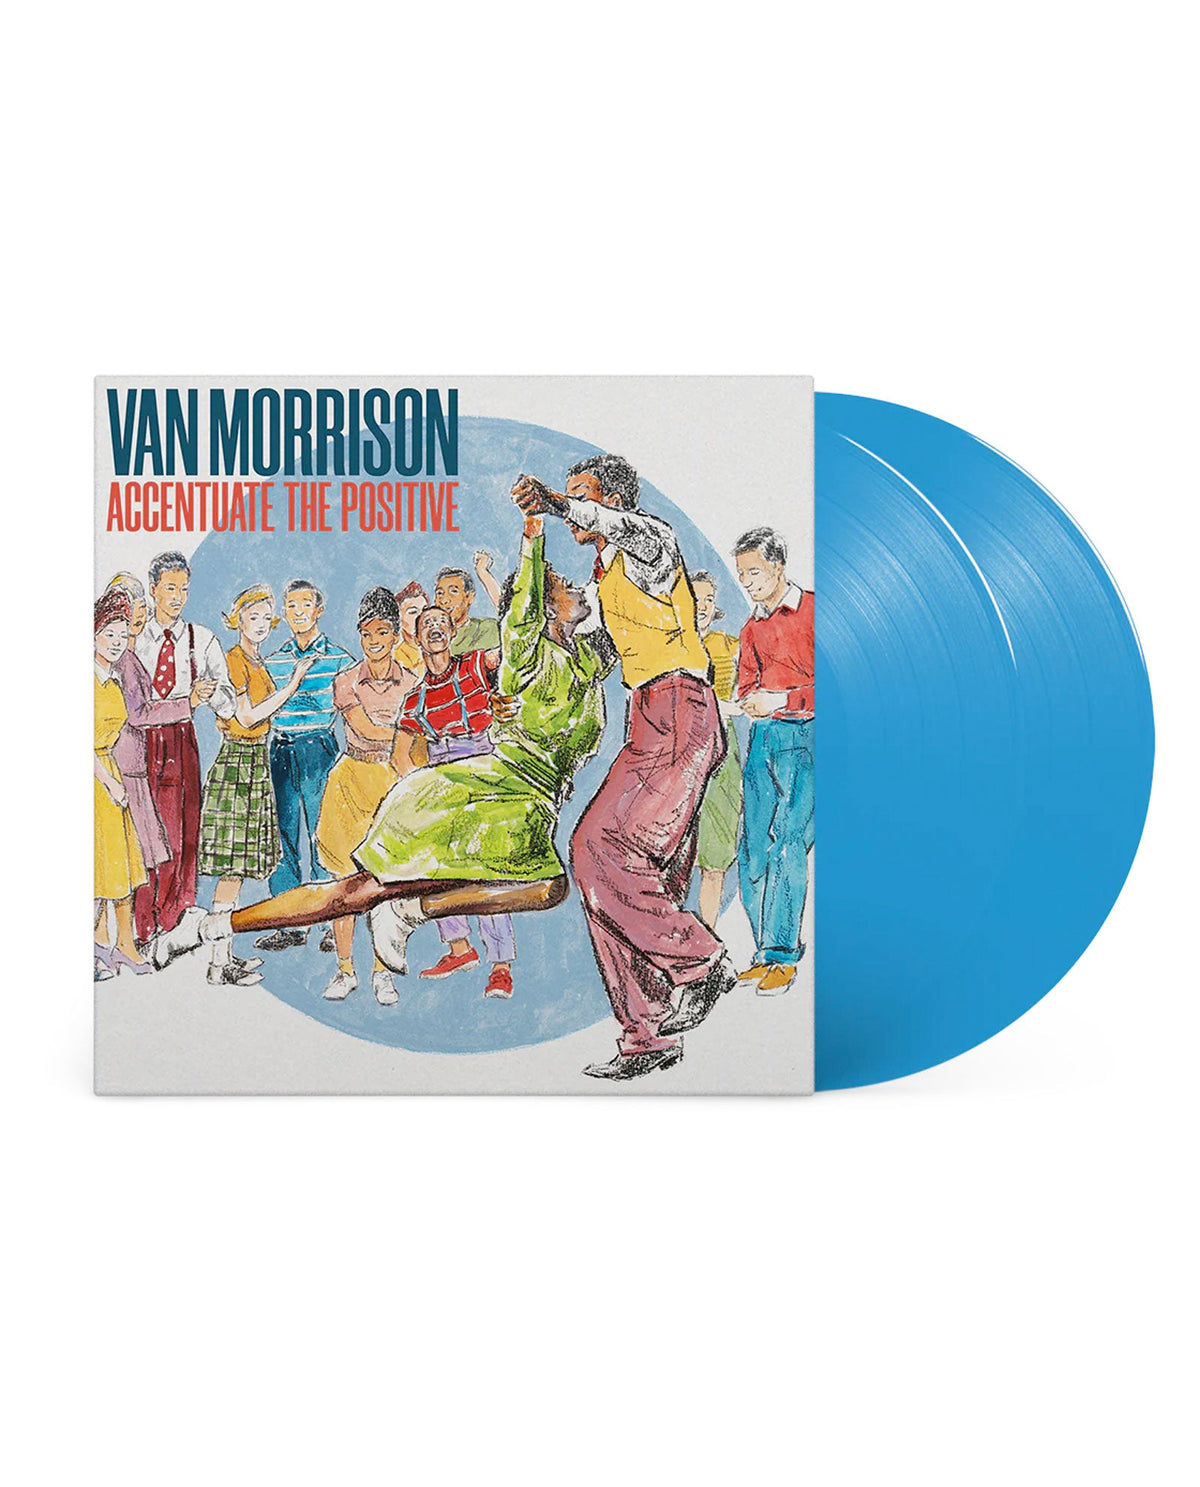 Van Morrison - LP Vinilo Color "Accentuate The Positive" - D2fy · Rocktud - Rocktud